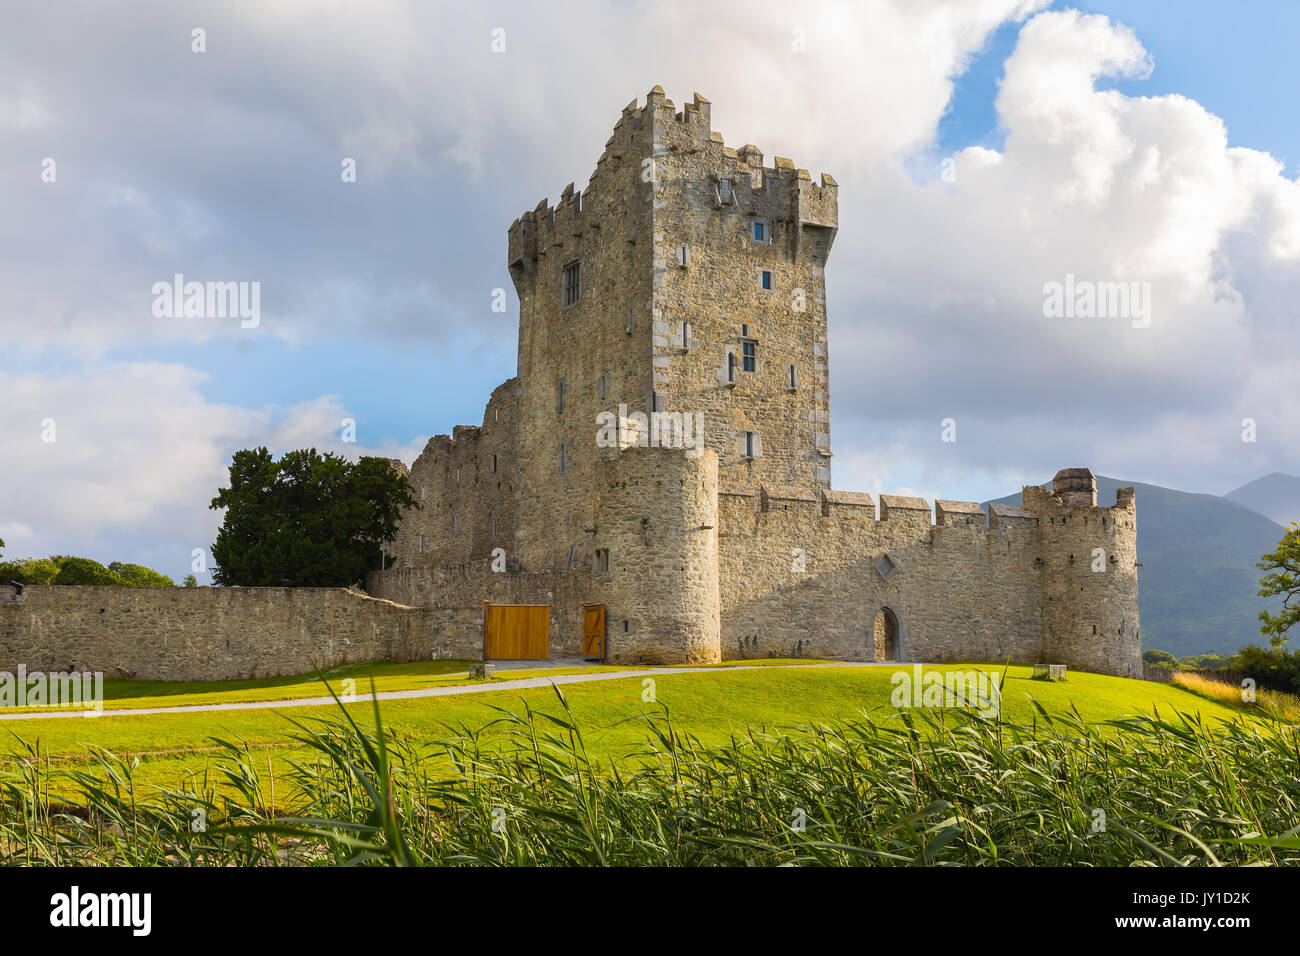 Le Château de Ross est une tour du Xvème siècle maison et garder sur le bord de Lough Leane, dans le Parc National de Killarney, comté de Kerry, Irlande. Banque D'Images